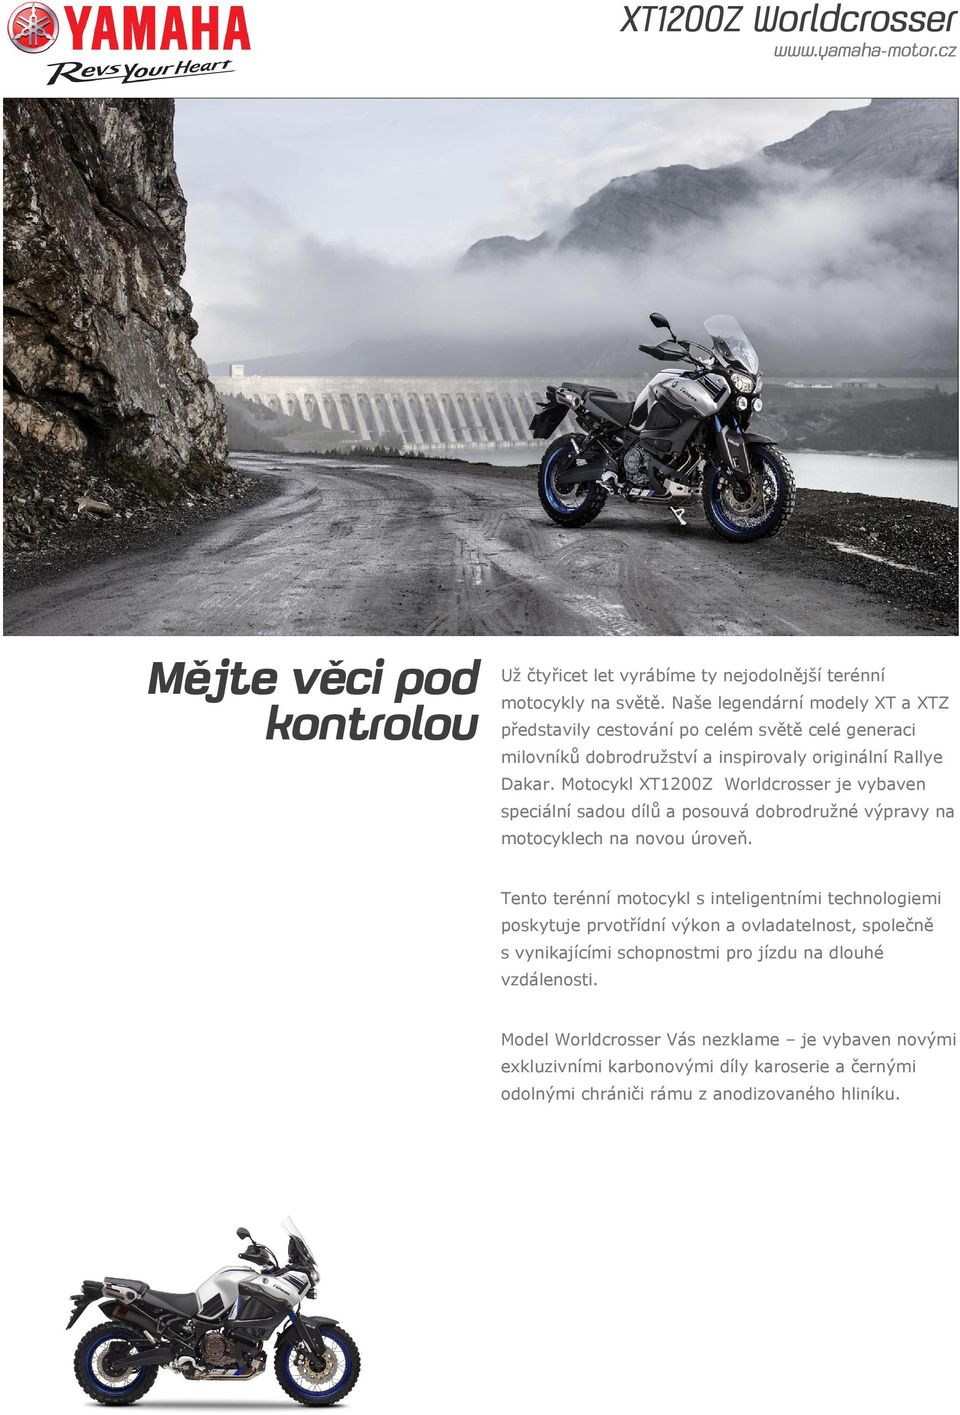 Motocykl XT1200Z Worldcrosser je vybaven speciální sadou dílů a posouvá dobrodružné výpravy na motocyklech na novou úroveň.